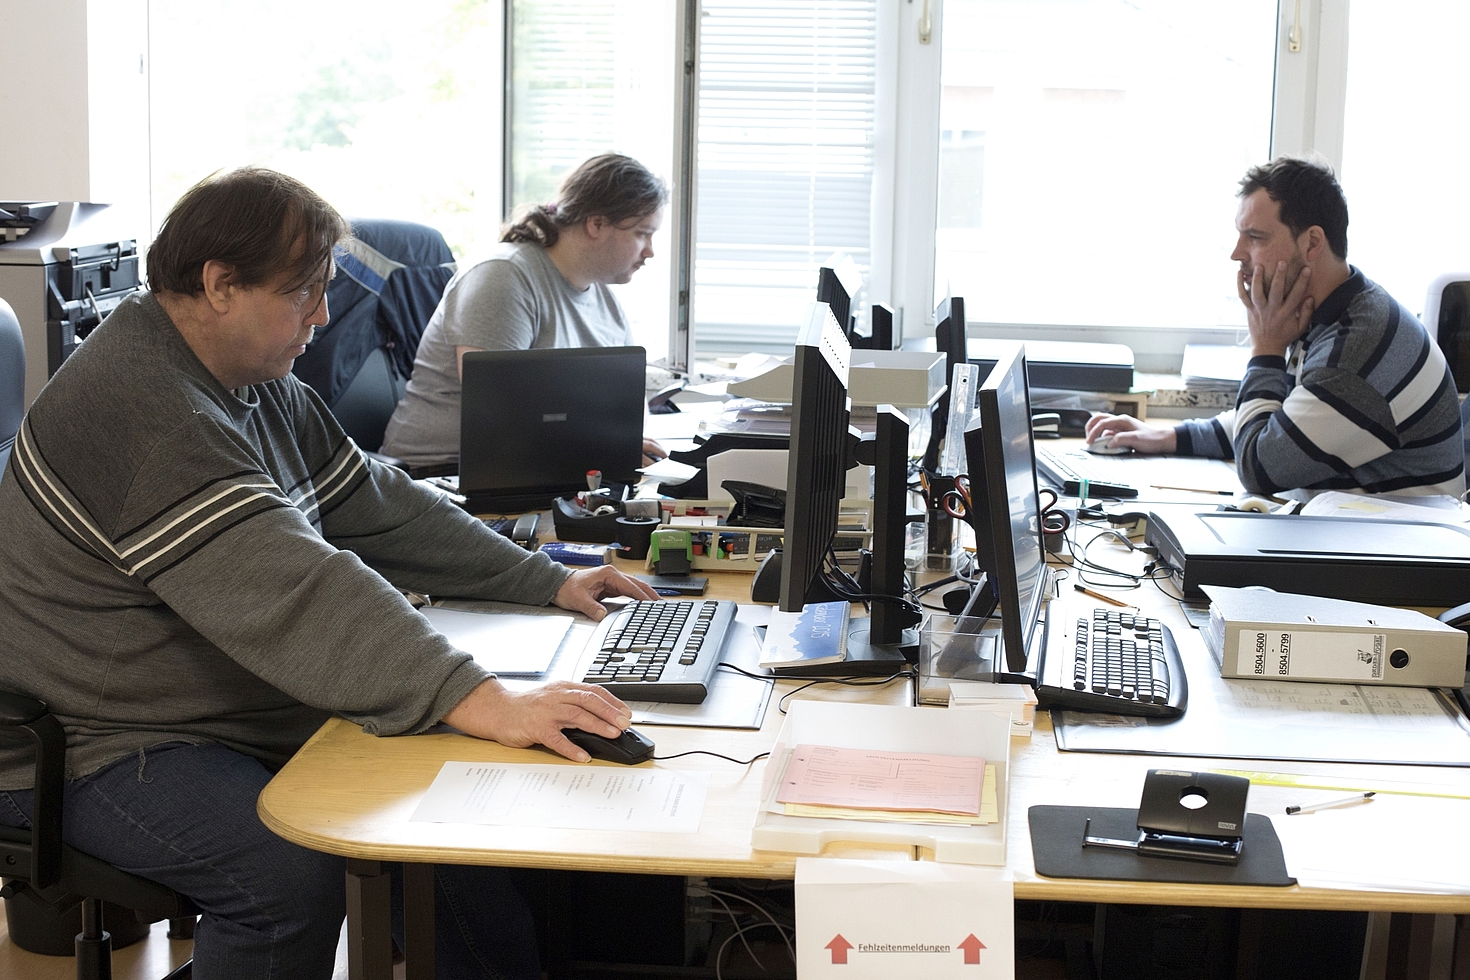 Foto: Zwei Männer und eine Frau arbeiten im Büro am Computer